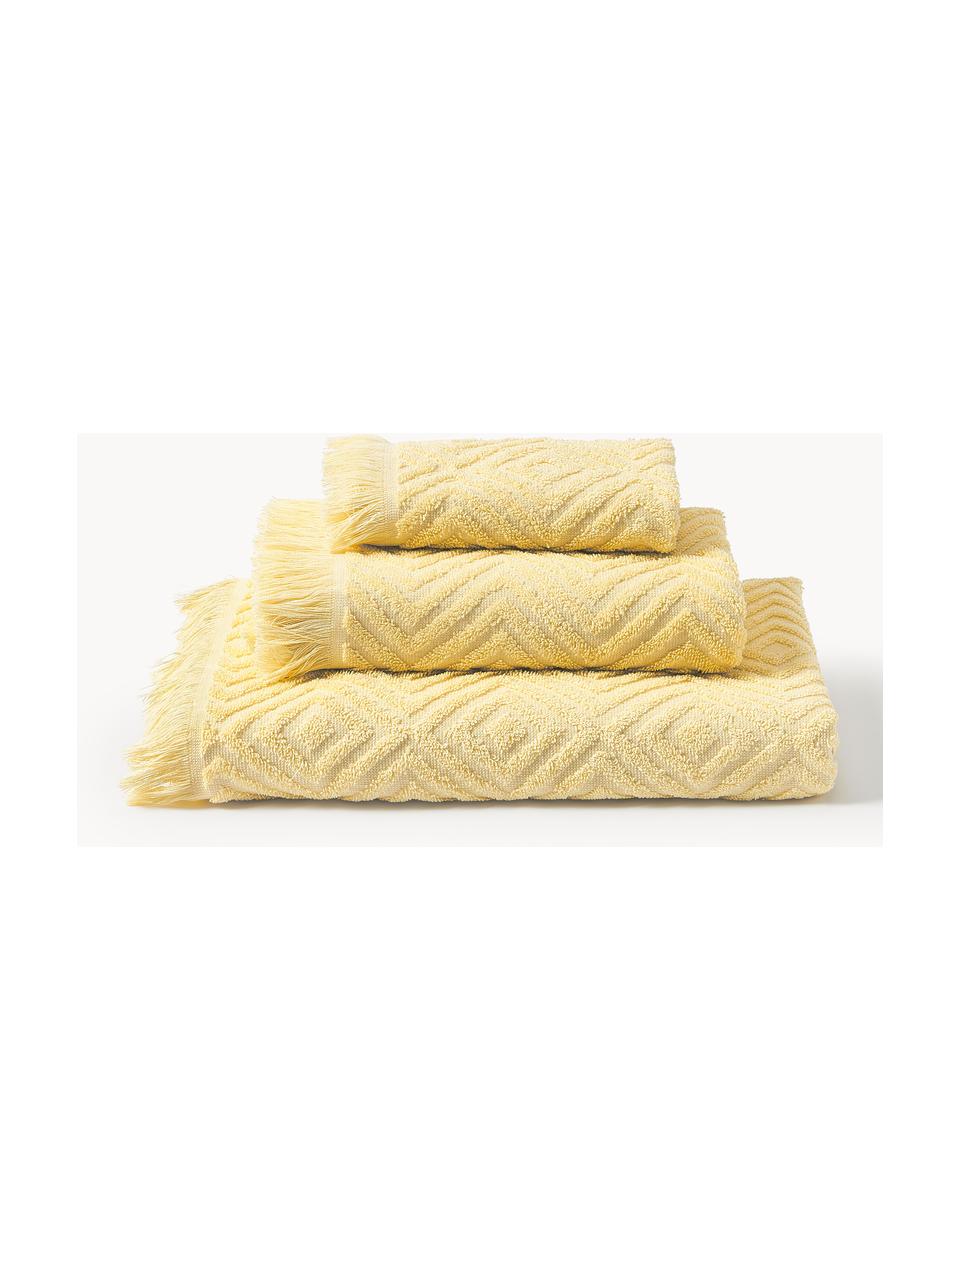 Handdoekenset Jacqui met hoog-laag patroon, in verschillende setgroottes, Lichtgeel, Set van 3 (gastendoekje, handdoek & douchehanddoek)